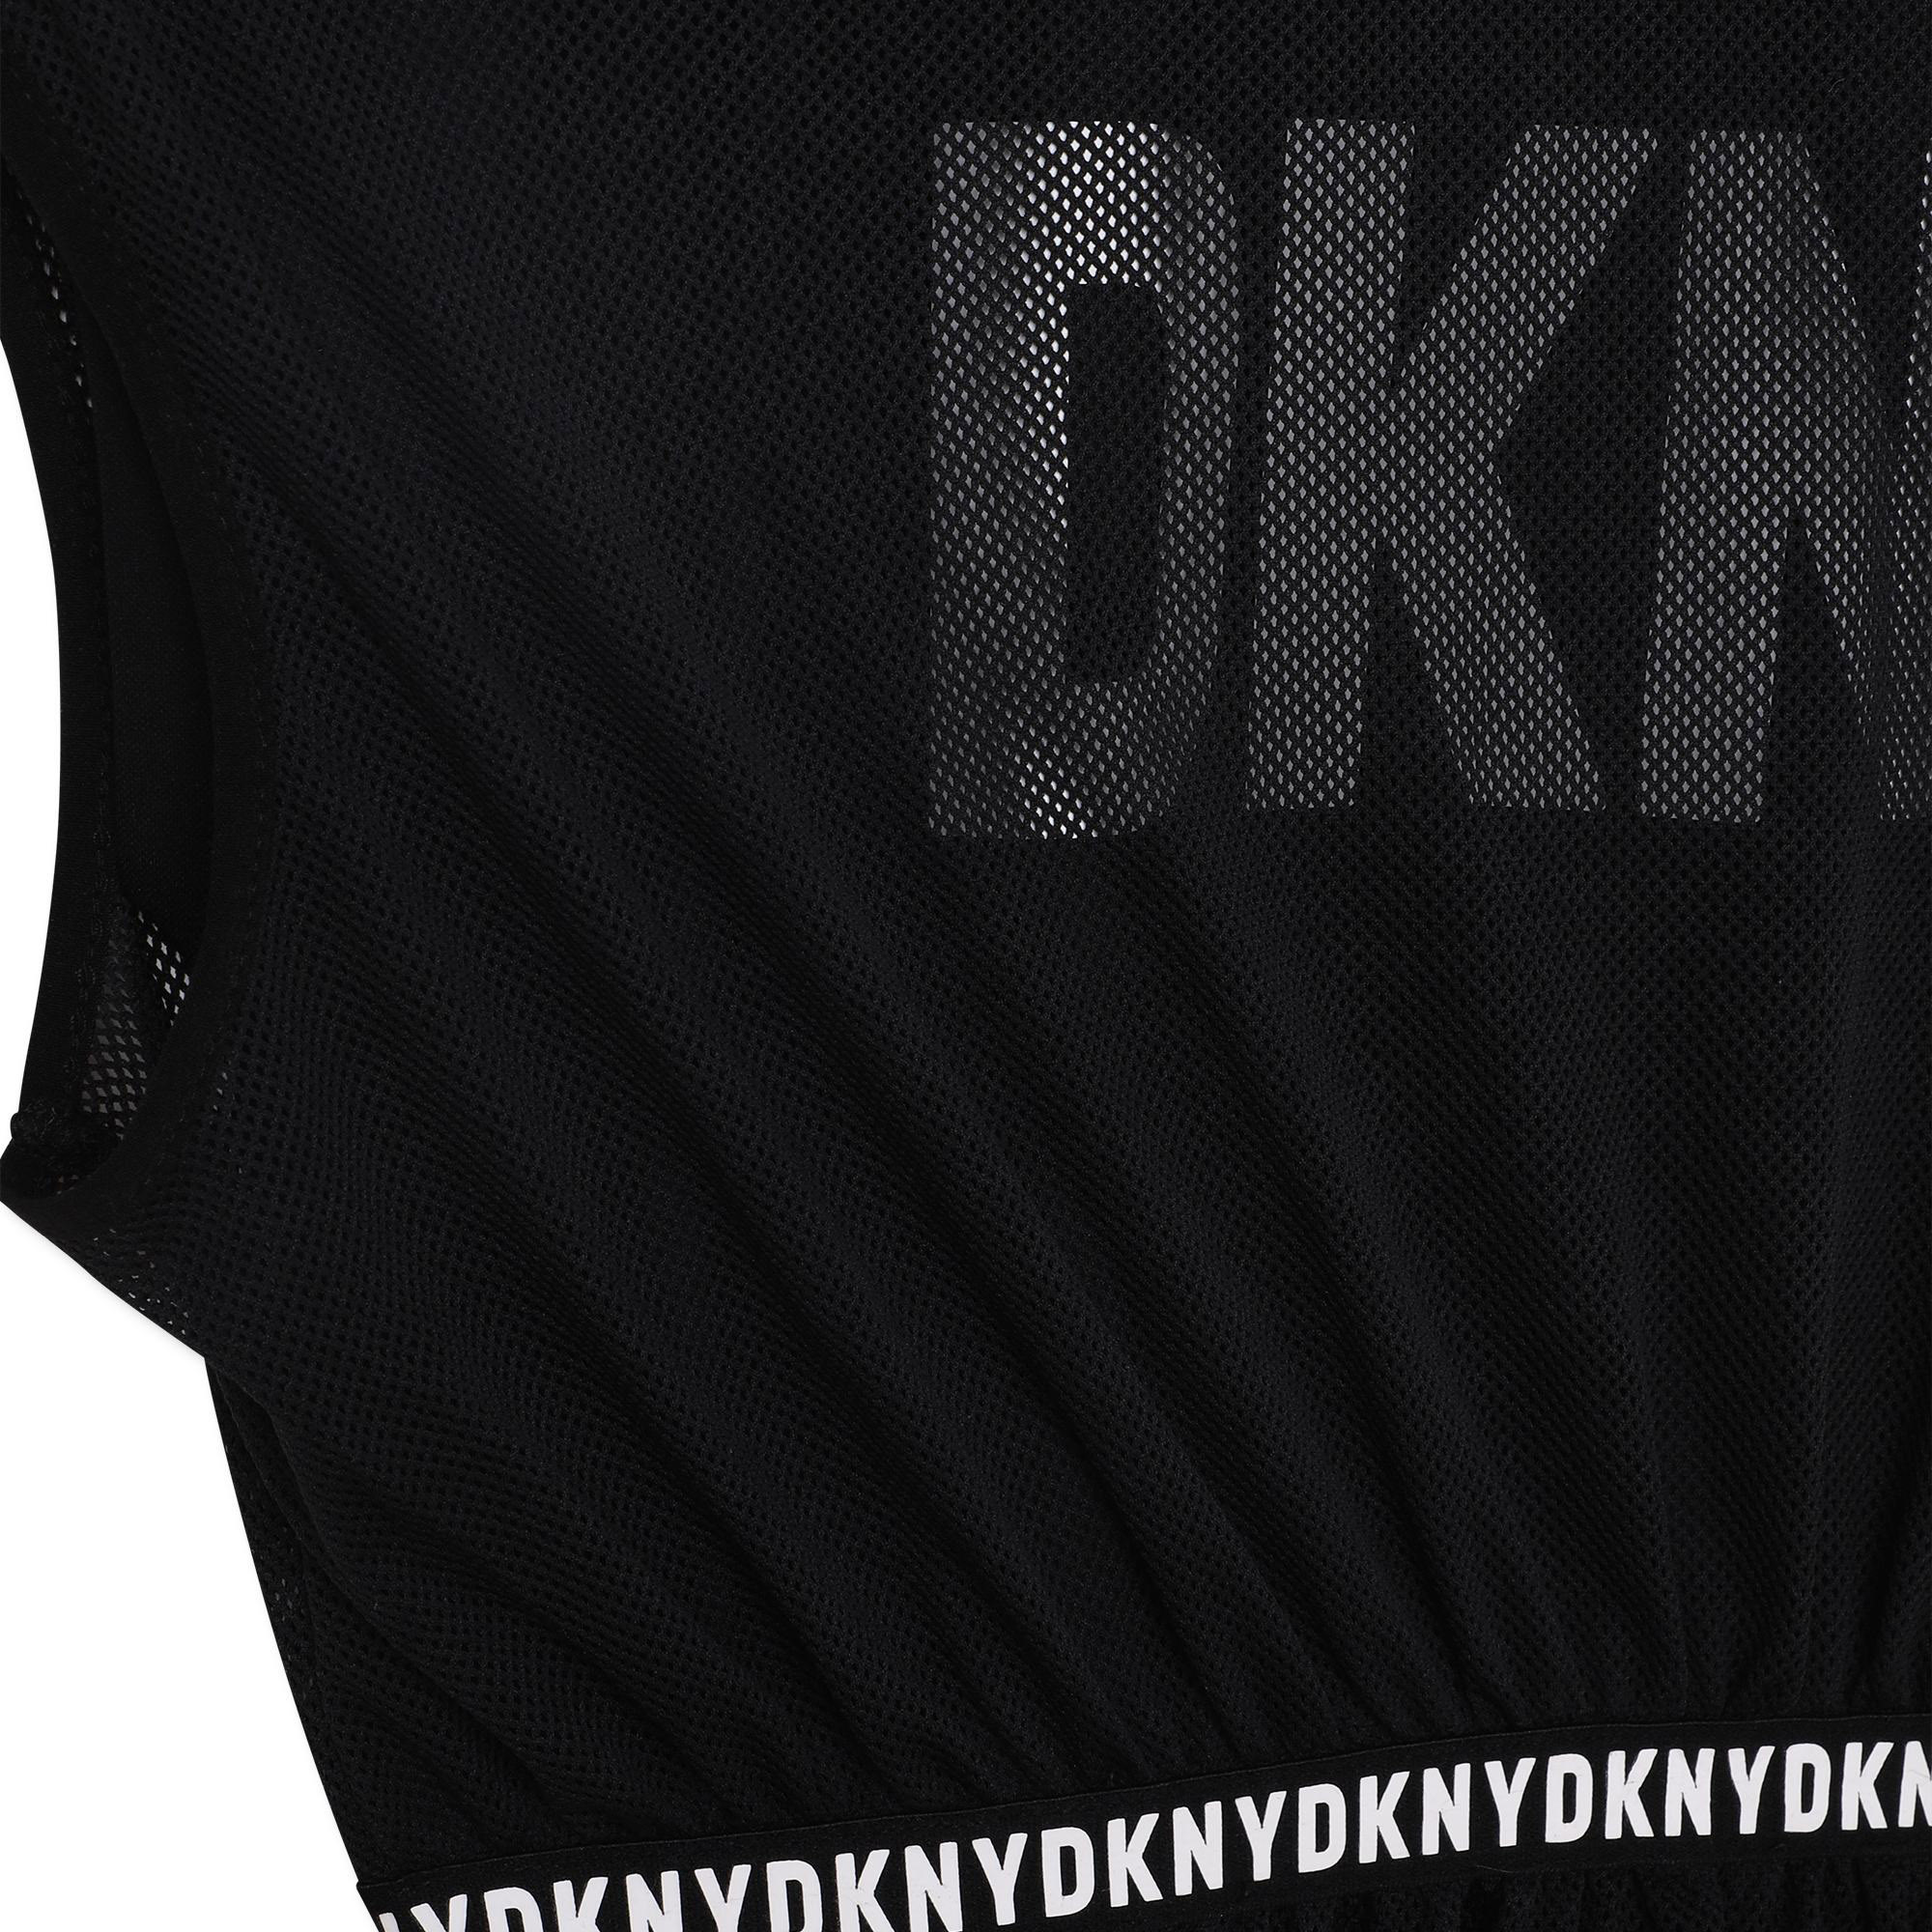 2-in-1 jurk met open rug DKNY Voor